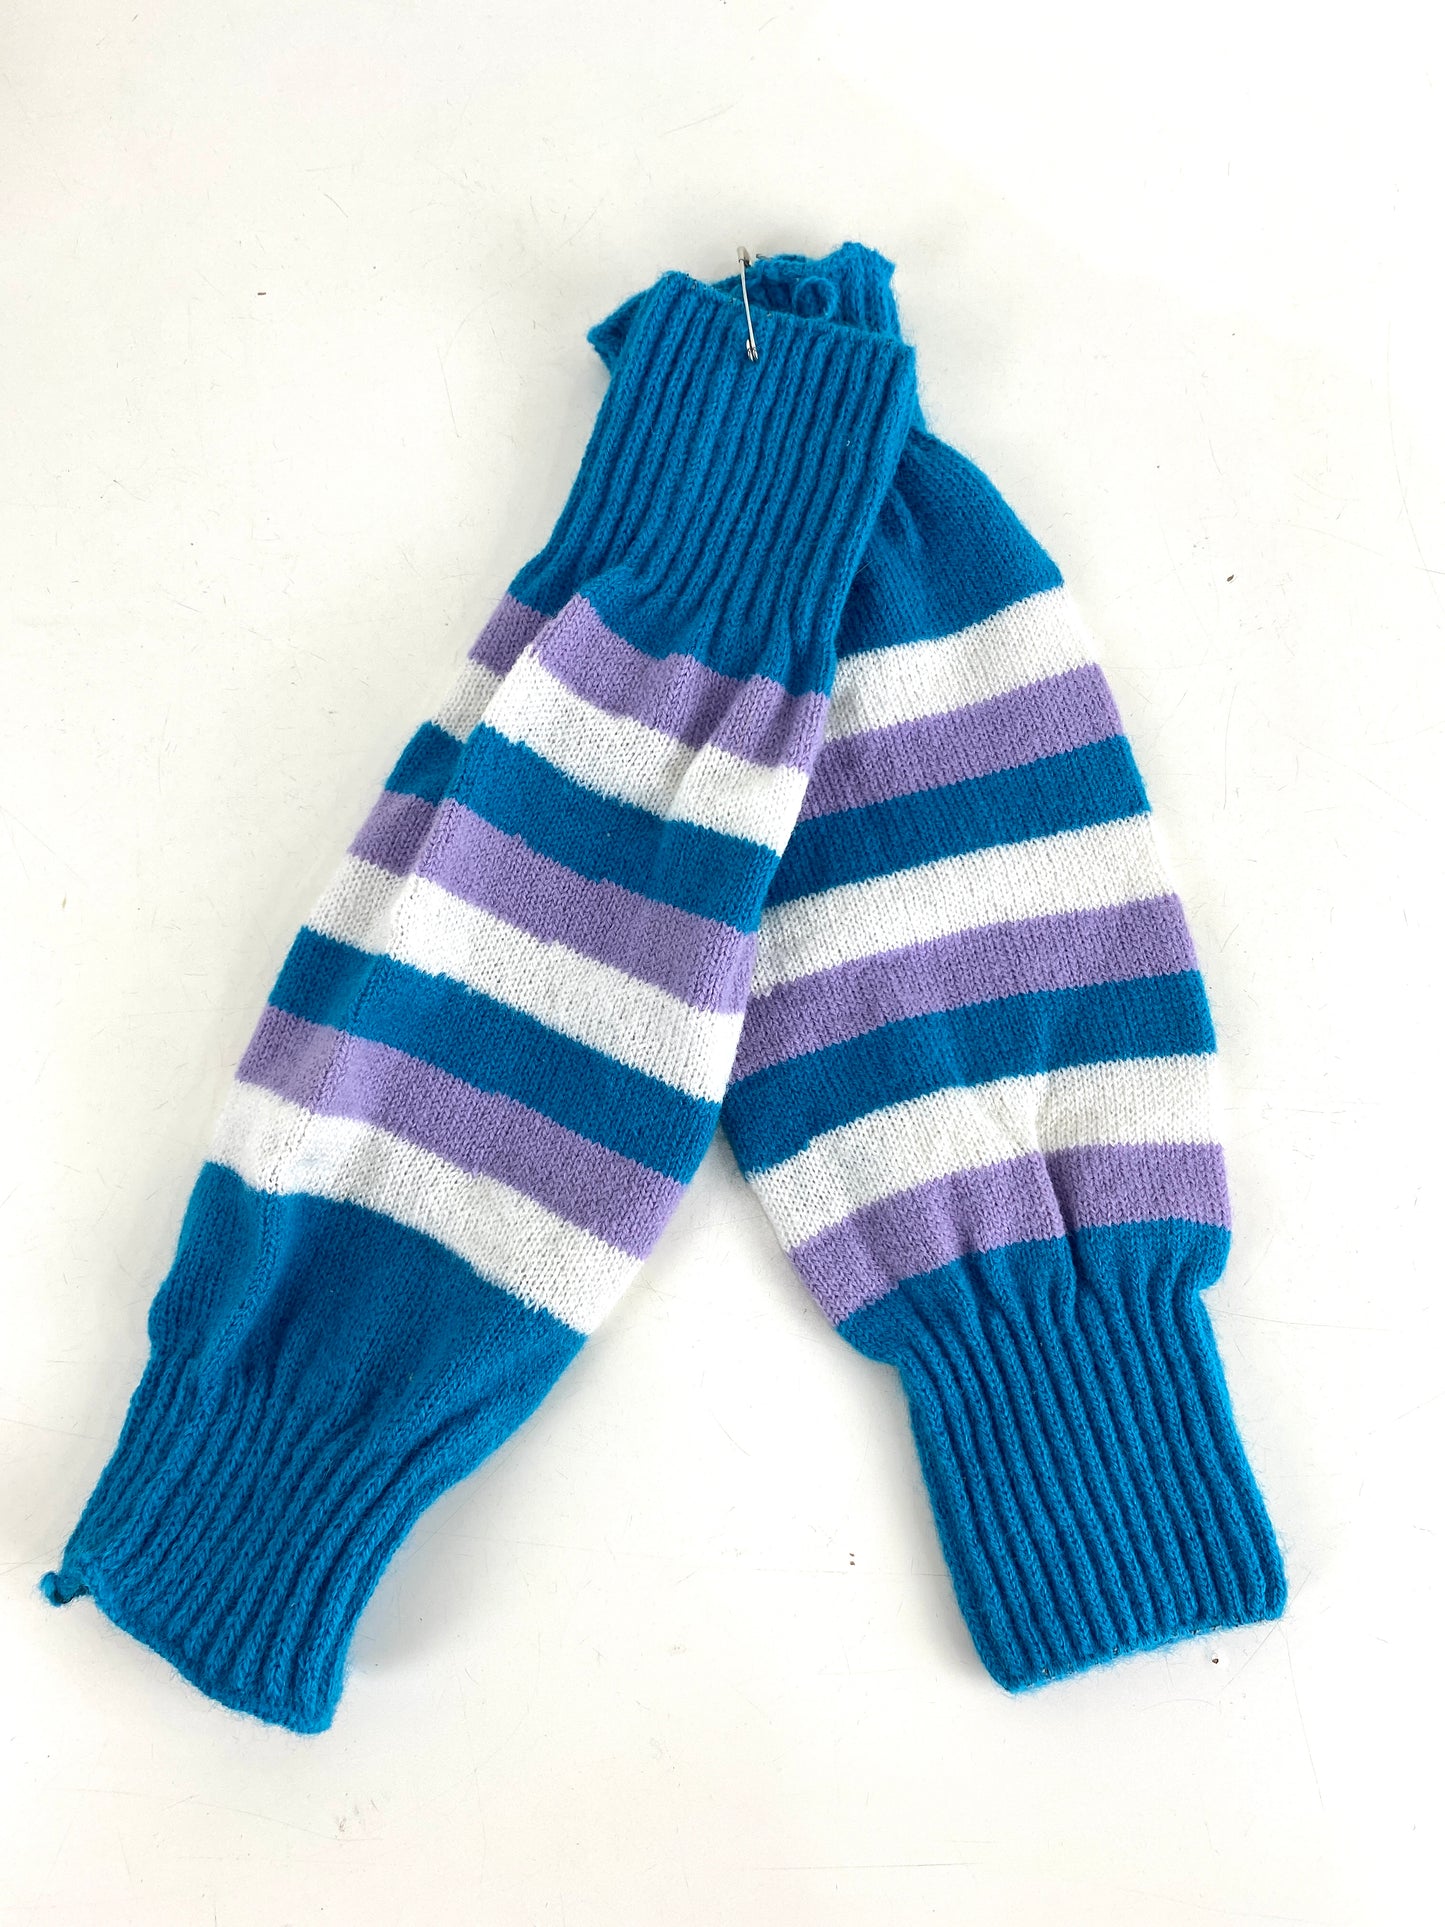 1980s Vintage Deadstock Acrylic Knit Leg Warmers, Blue/ Purple Stripe, NOS